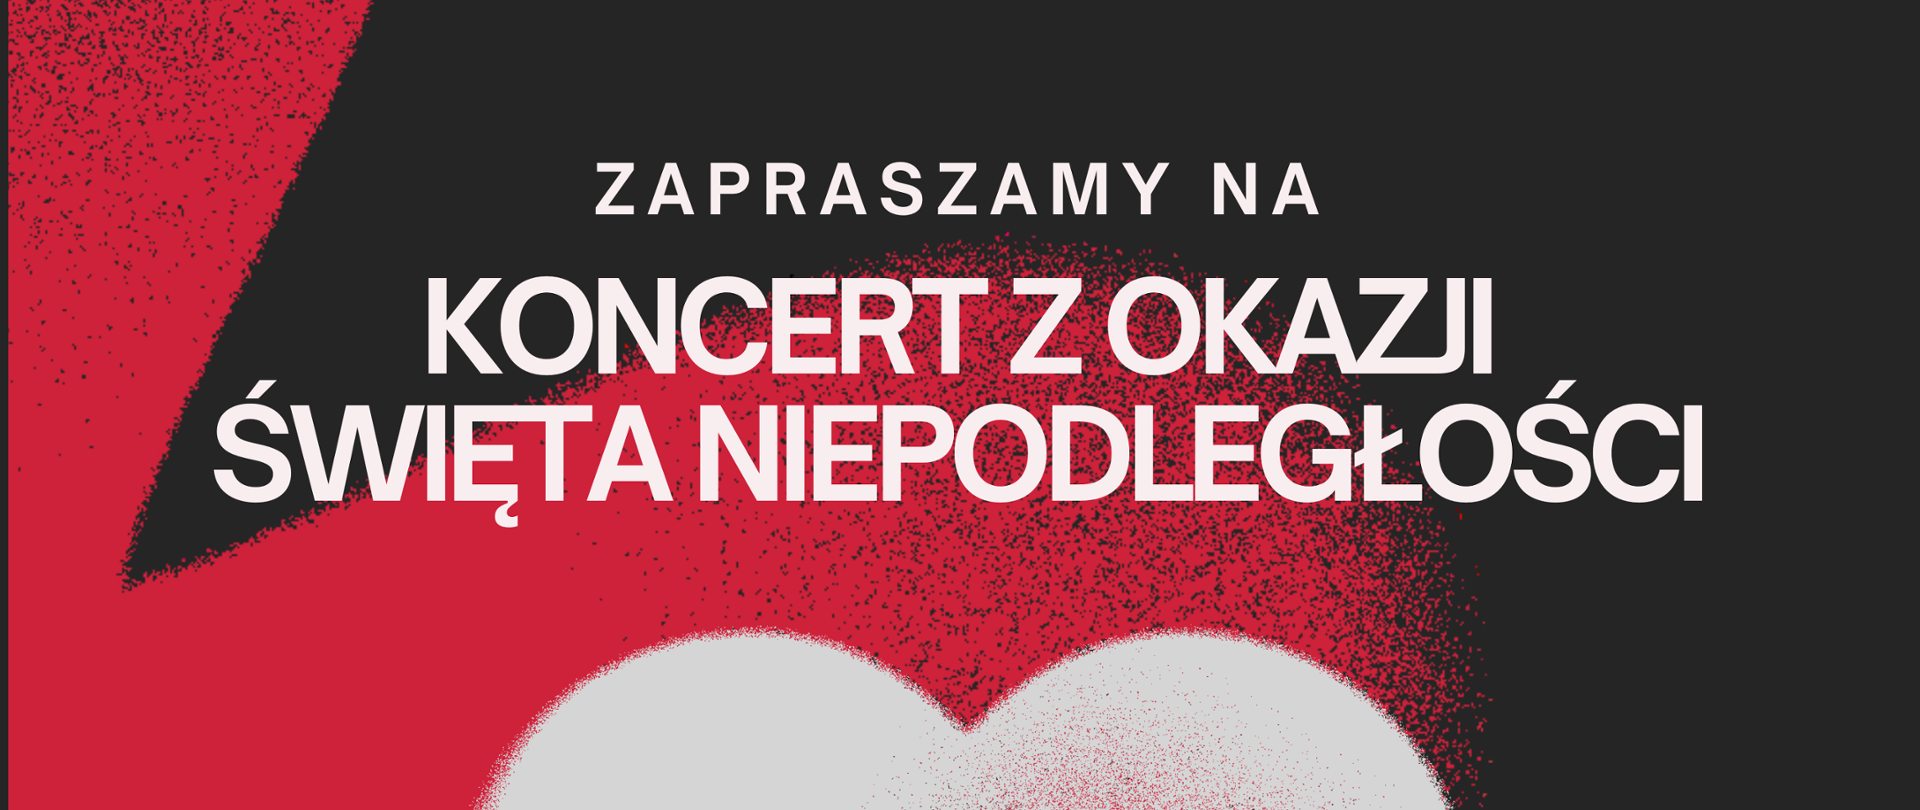 Zapraszamy na koncert z okazji Święta Niepodległości 13 listopada o godzinie 17.30. W tle flaga Polski.